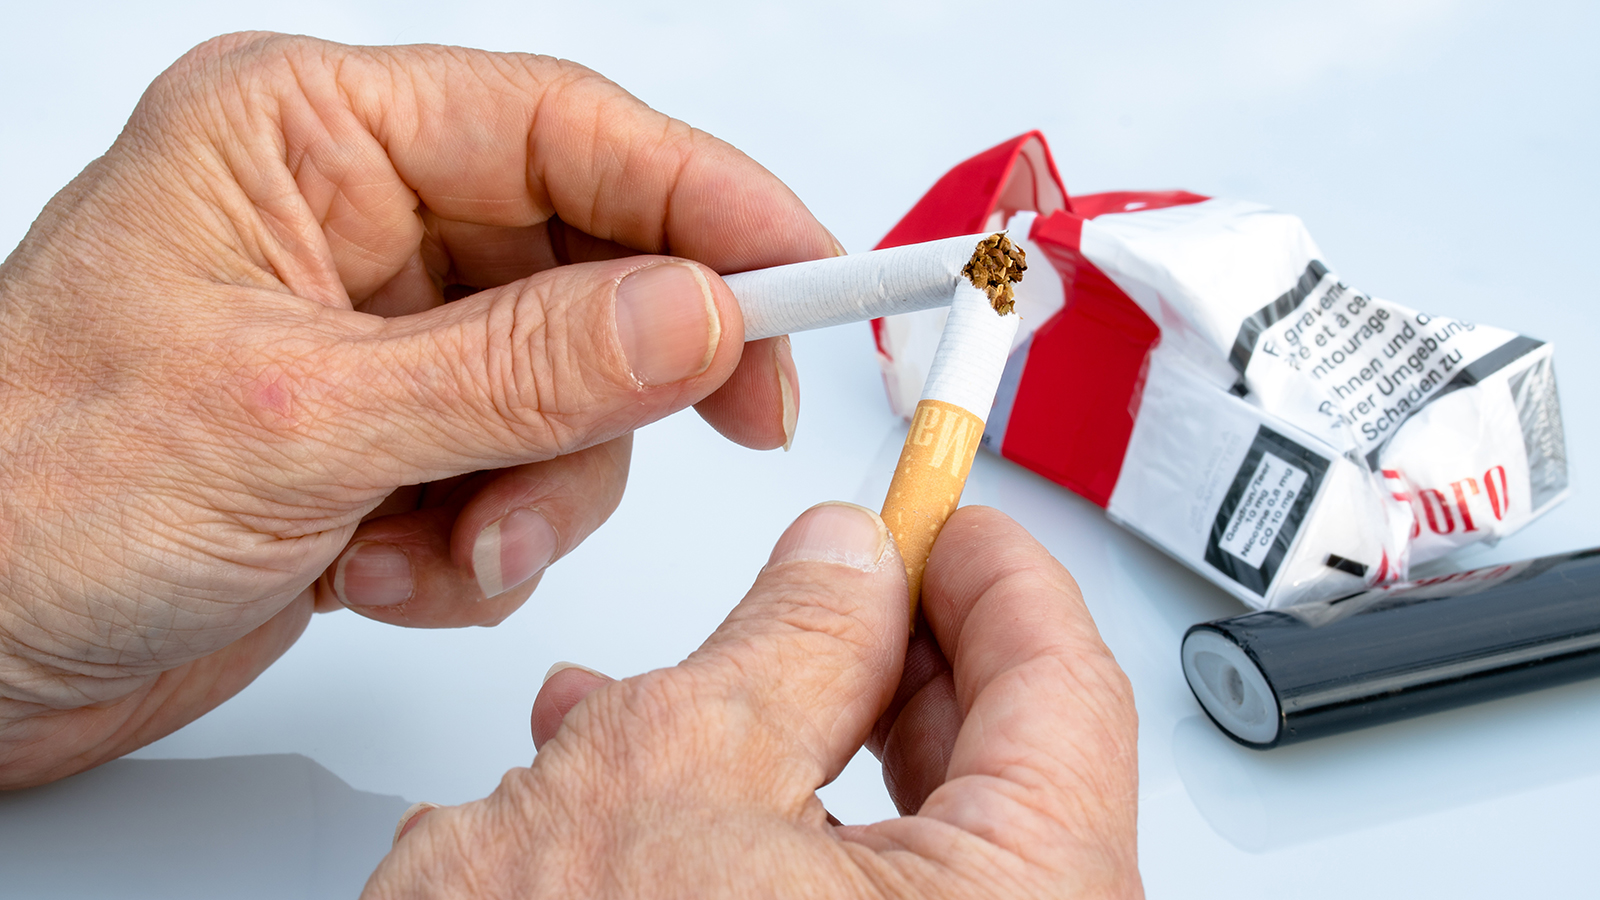 ‪الخطوة الأولى للإقلاع عن تدخين السيجارة الإلكترونية هي عدم العودة إلى السجائر العادية‬  (بيكسابي)